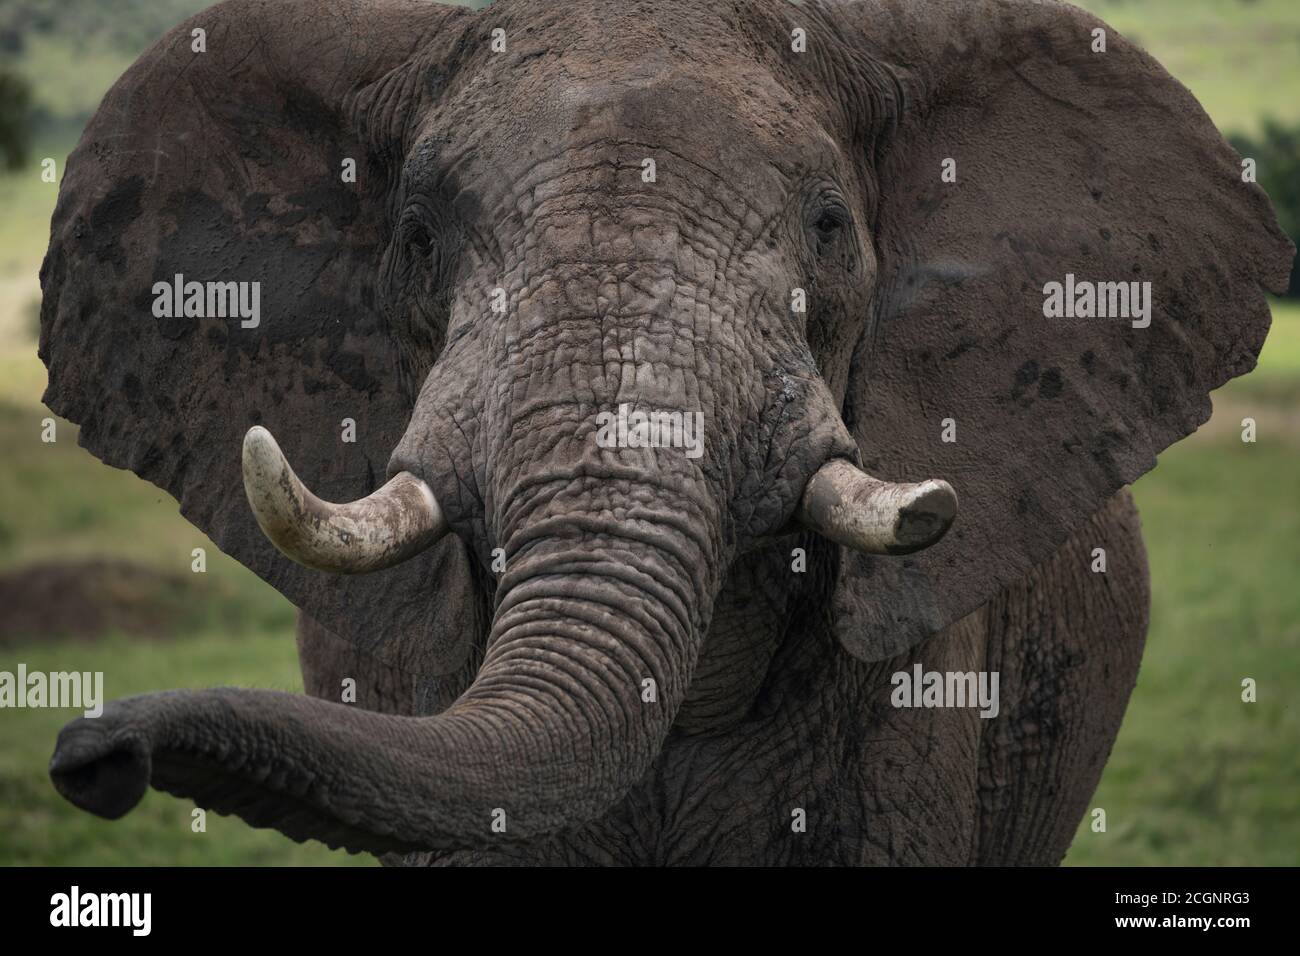 Ein afrikanischer Buschelefant (Loxodonta africana), das größte lebende Landtier, im Maasai Mara National Reserve in Kenia. Stockfoto